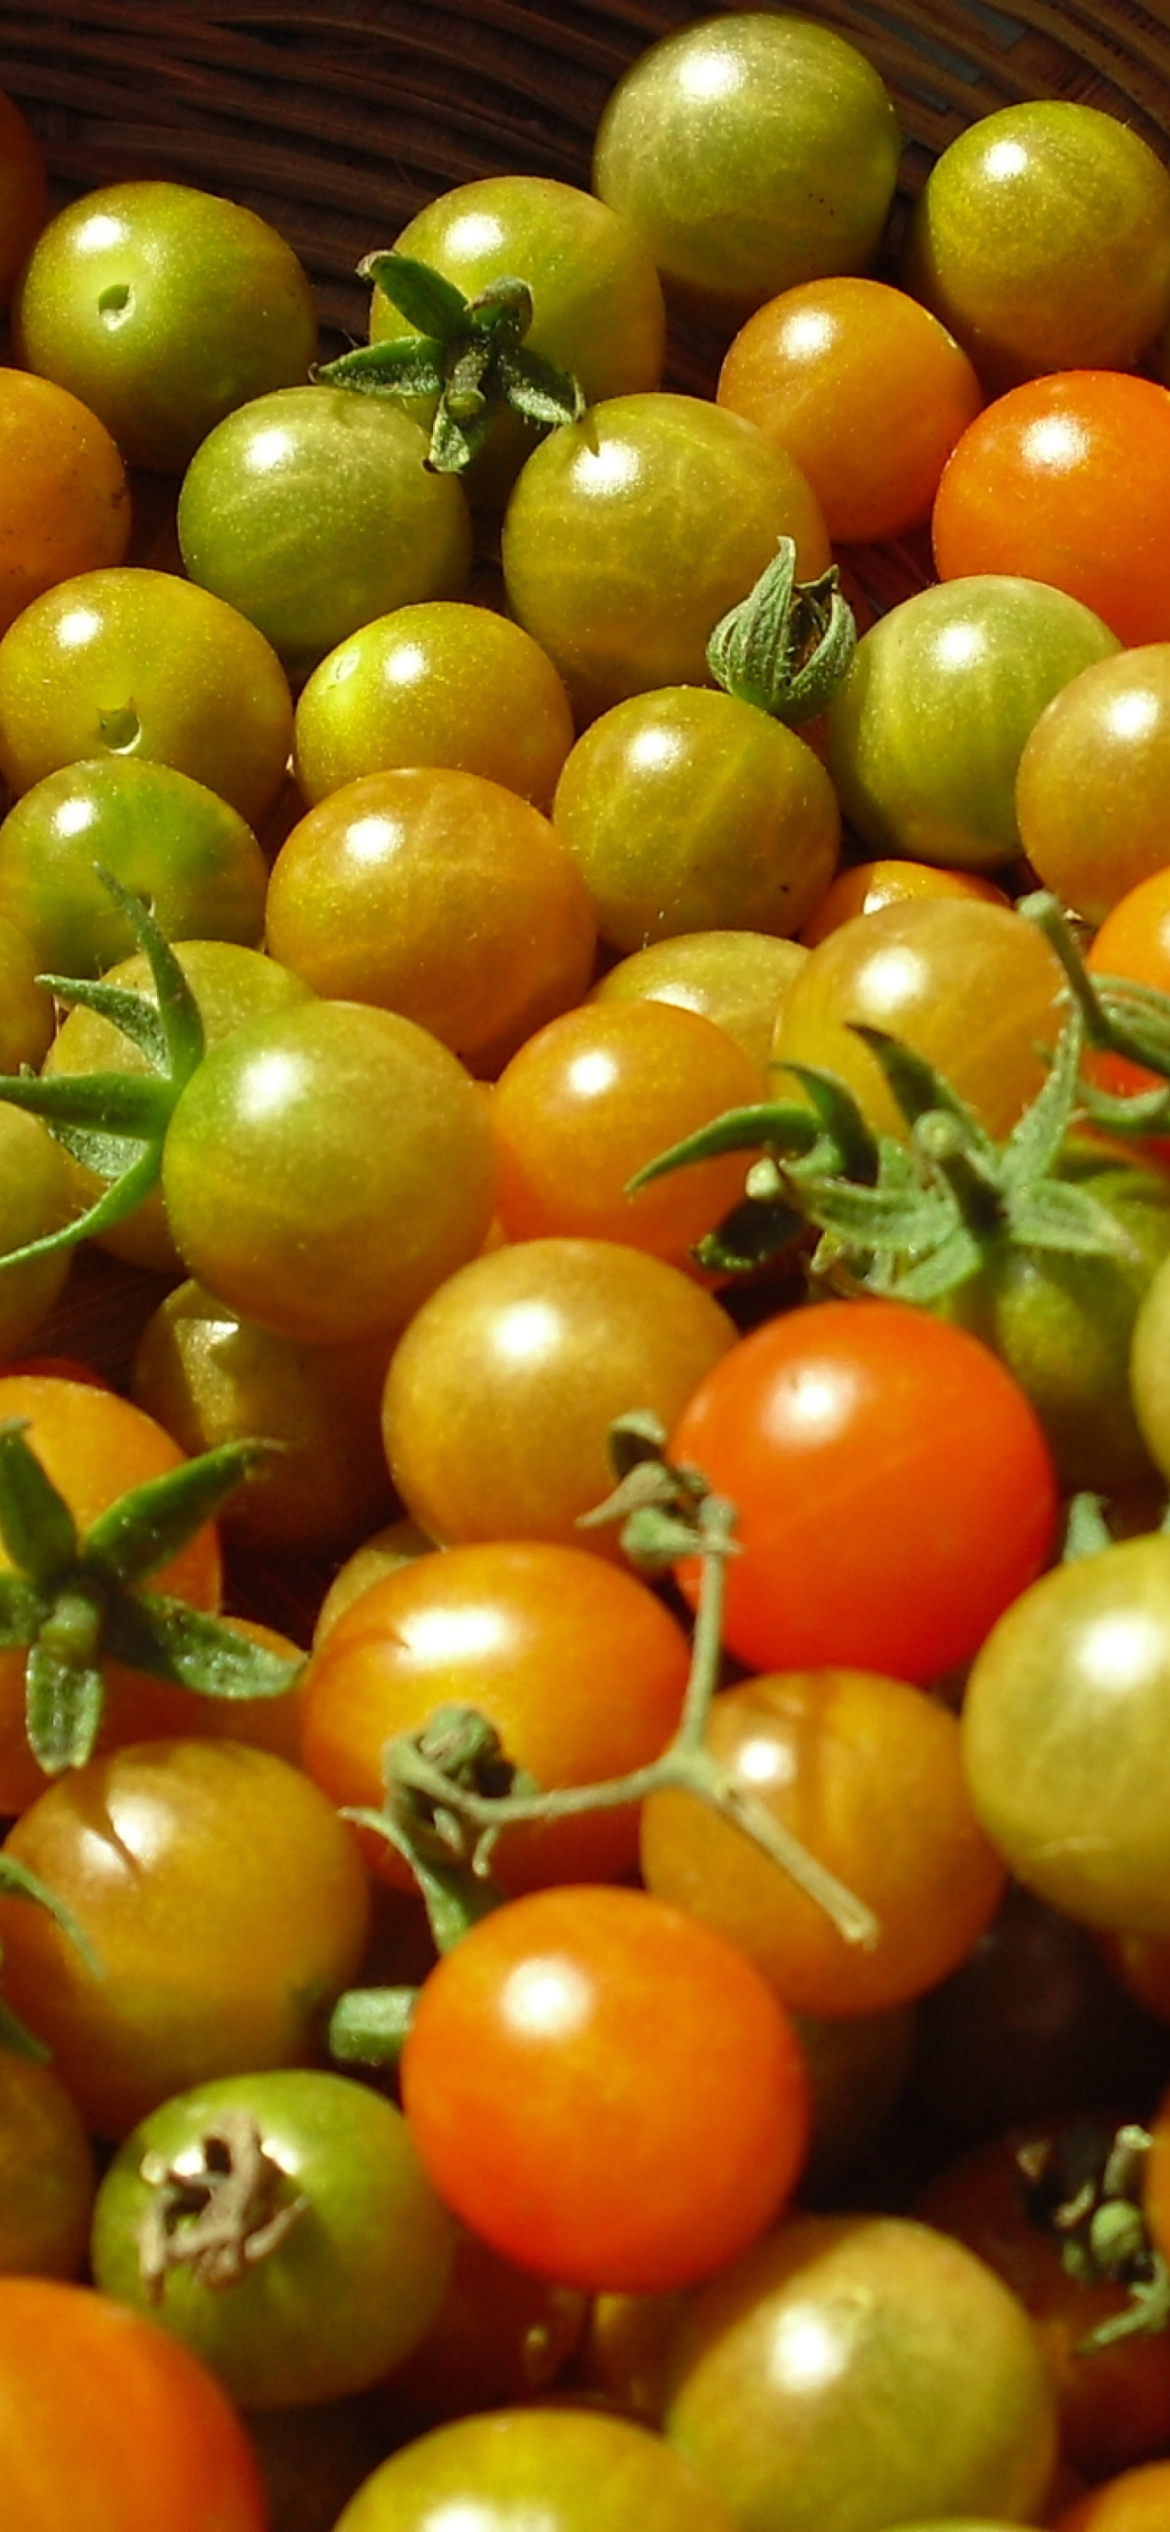 Обои Tomatoes 1170x2532